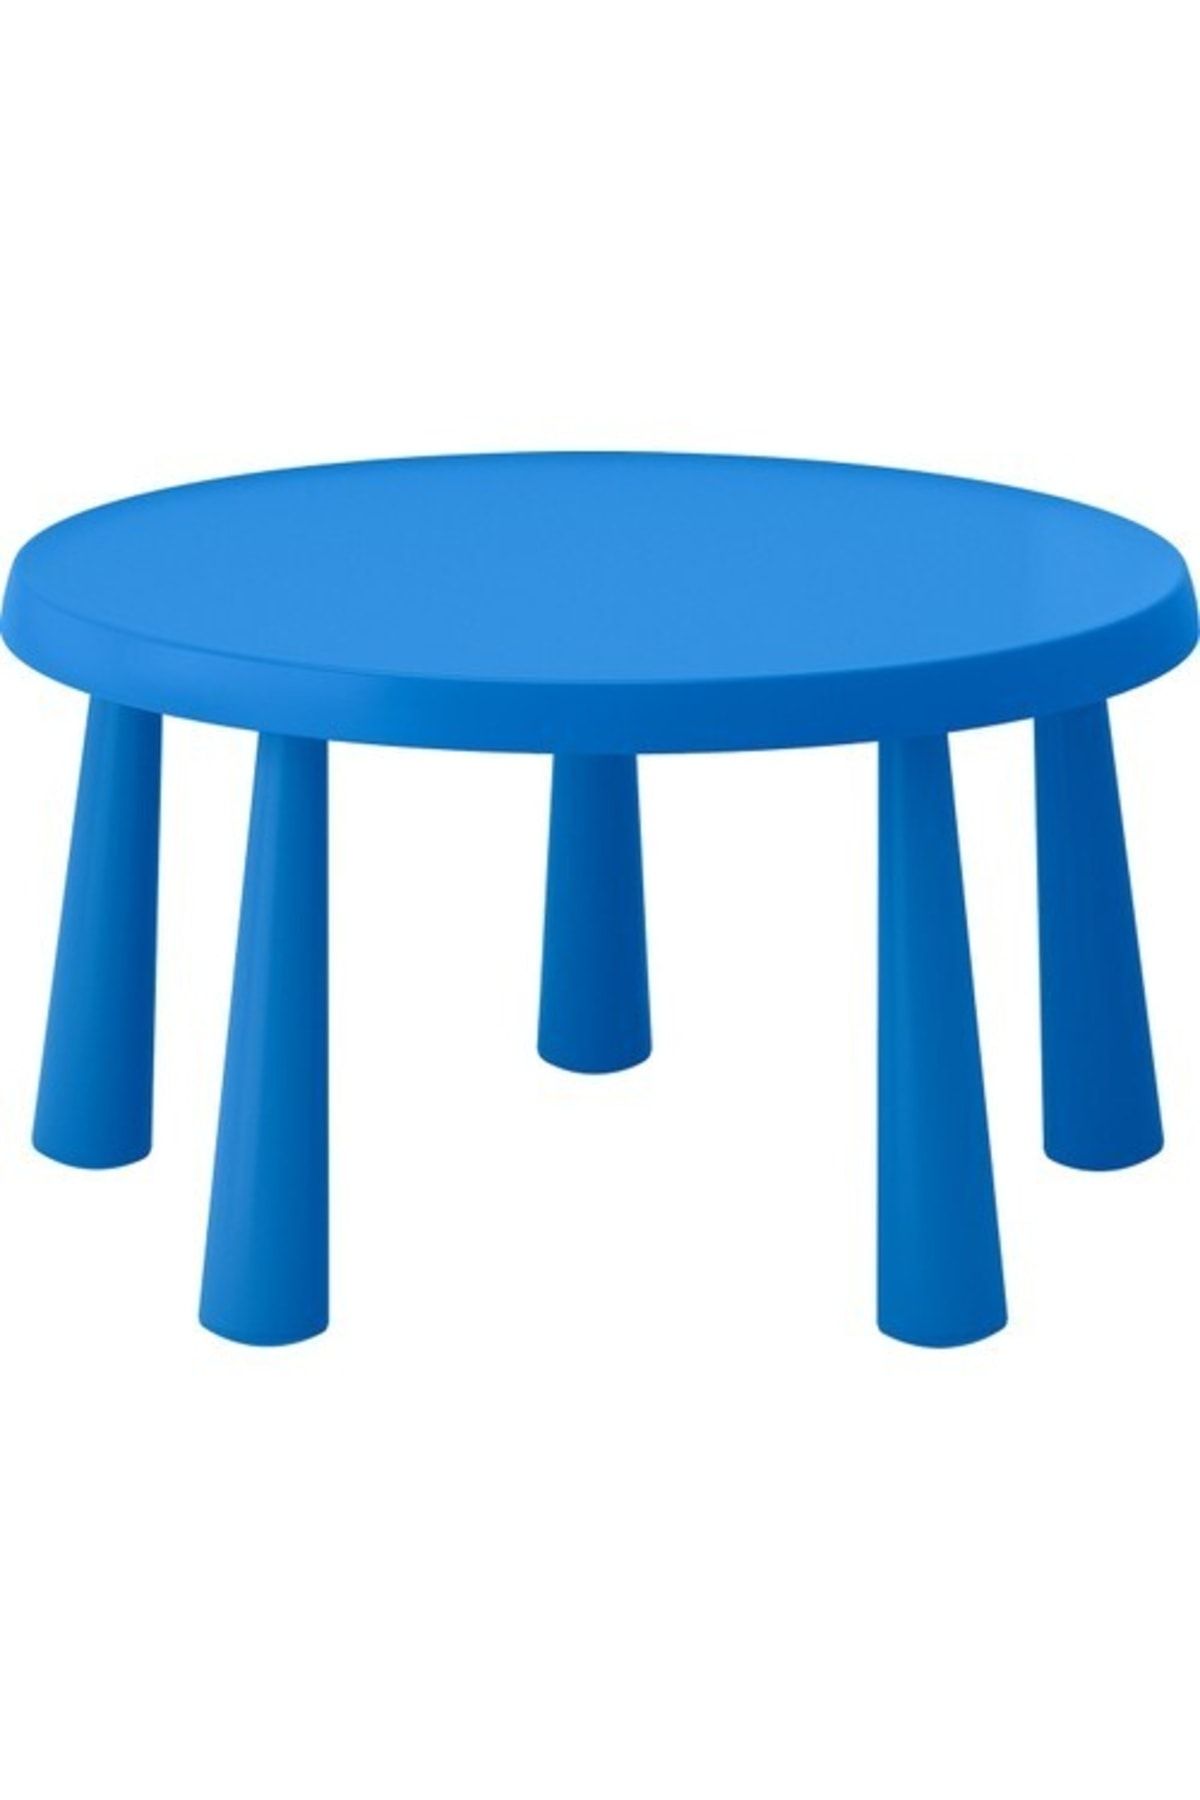 IKEA Mammut Çocuk Masası  Yuvarlak  Mavi